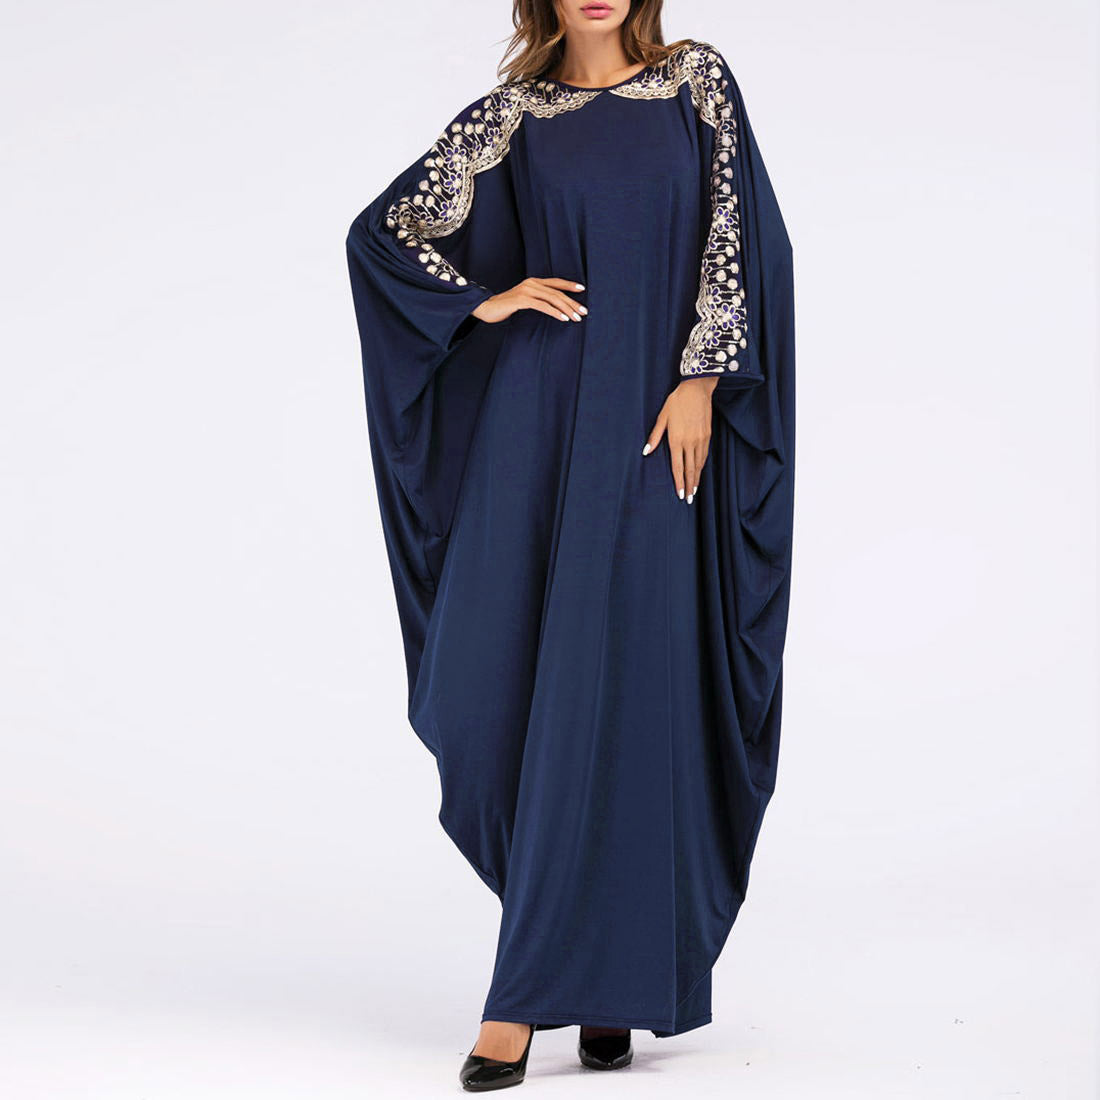 Rochie in stil musulman pentru femei, cu maneca liliac ?i imprimeu, marime mare, rochie lunga